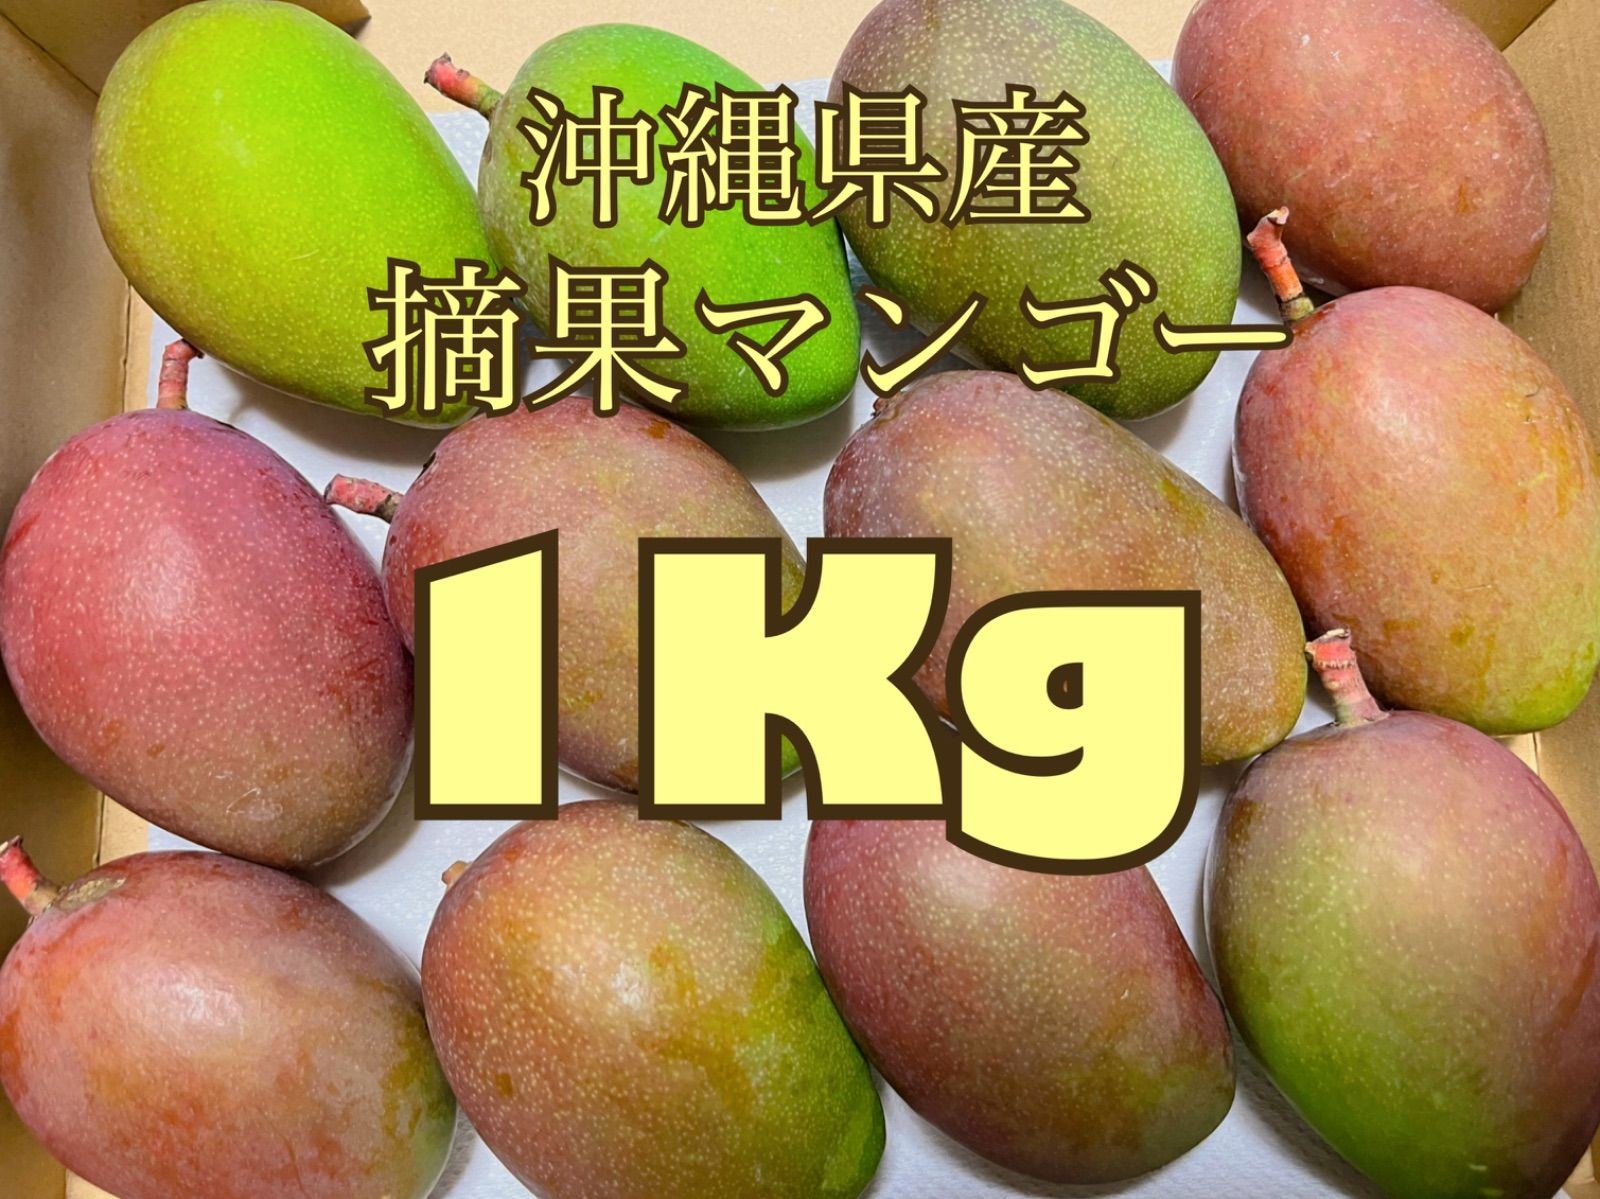 海外限定 沖縄県産 摘果マンゴー 青マンゴー グリーンマンゴー1kg